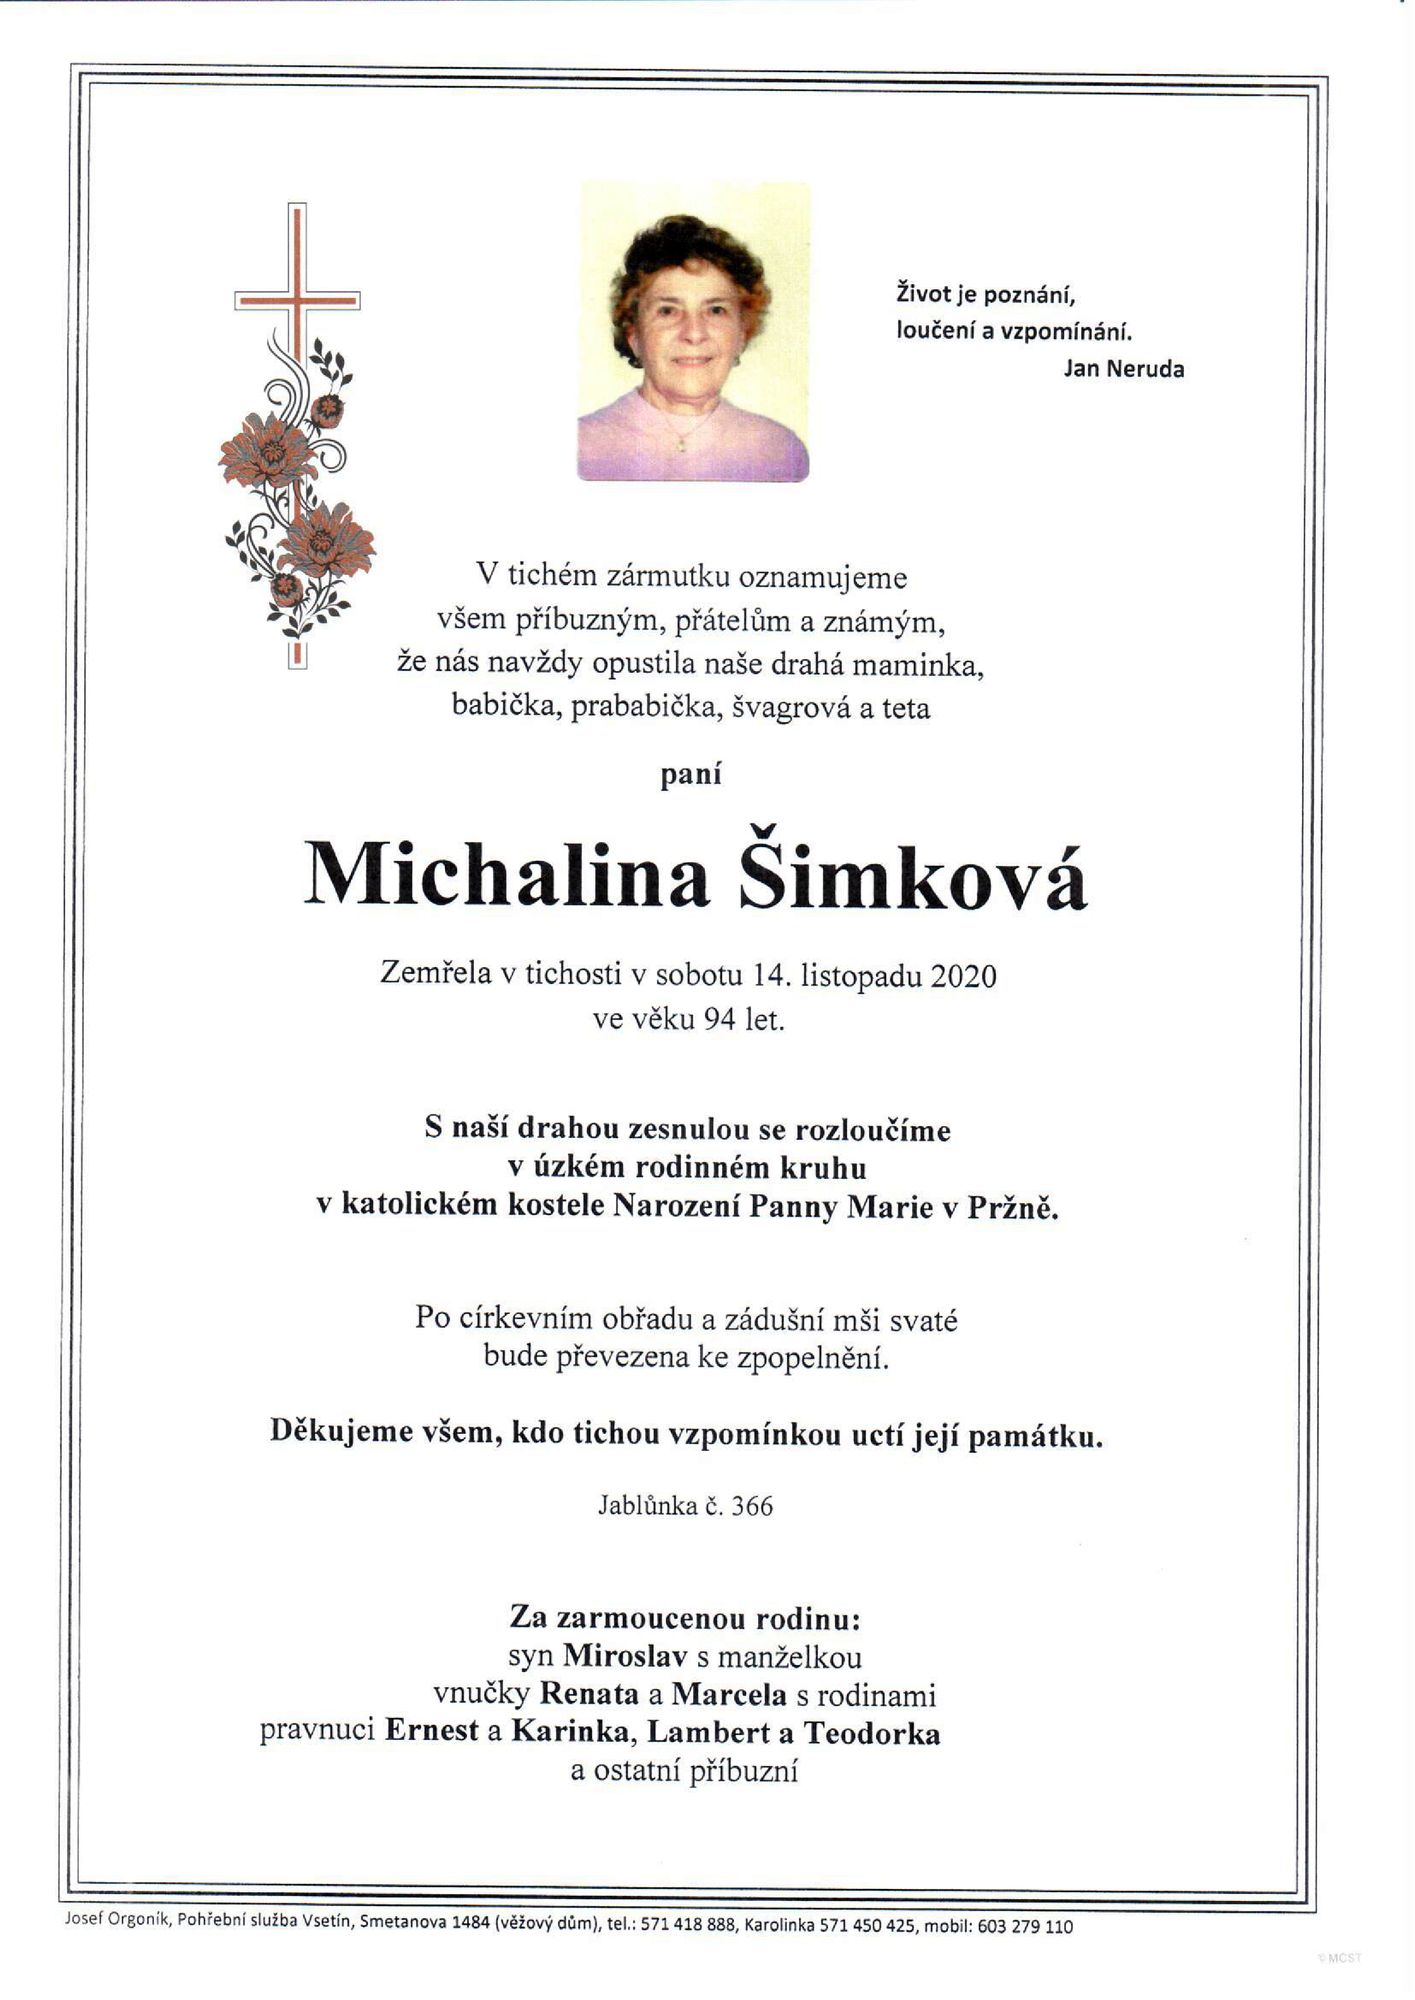 Michalina Šimková